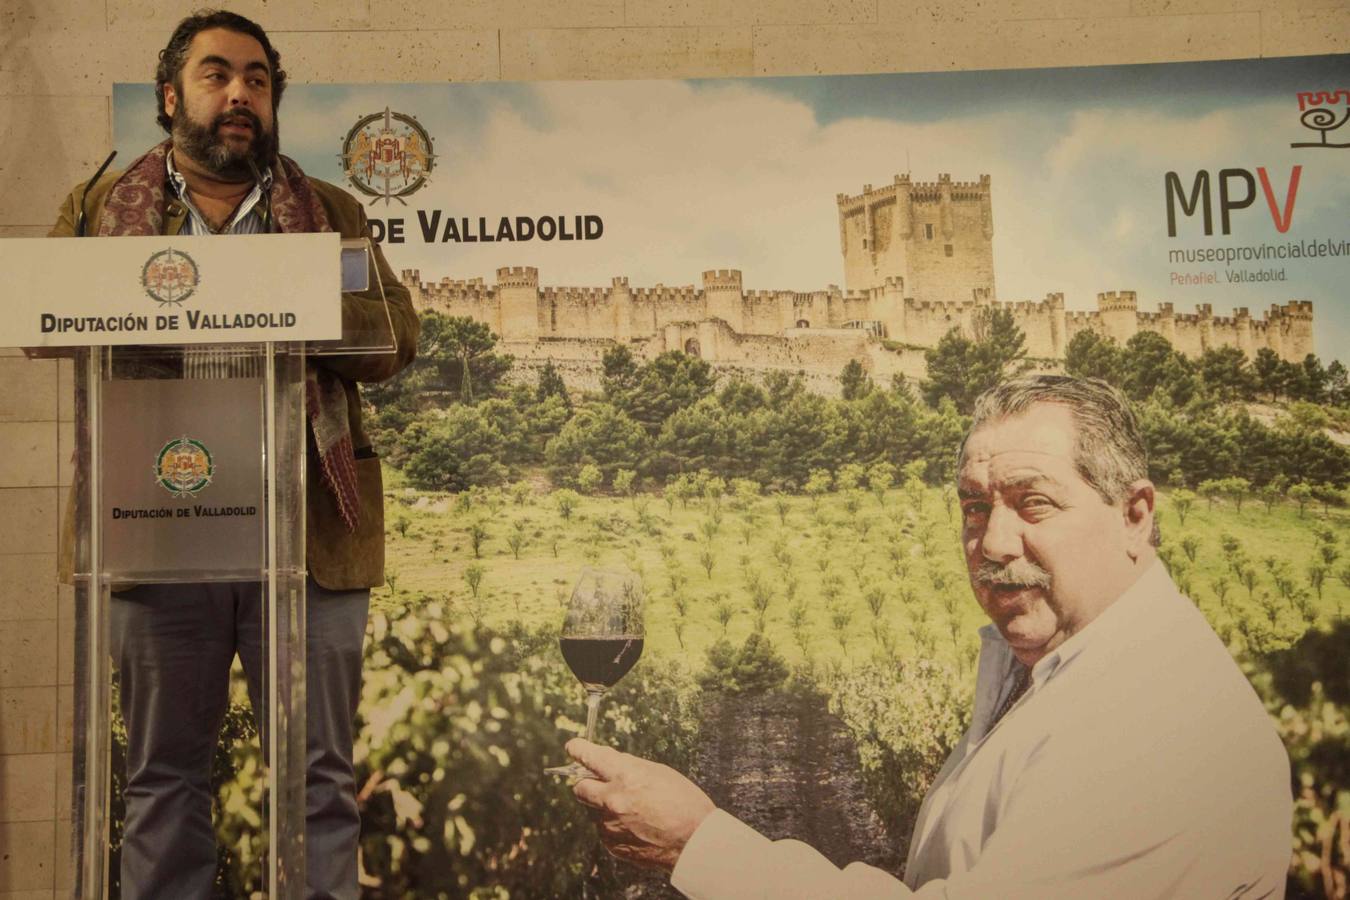 La Diputación de Valladolid pone su nombre a la sala de catas del centro museístico